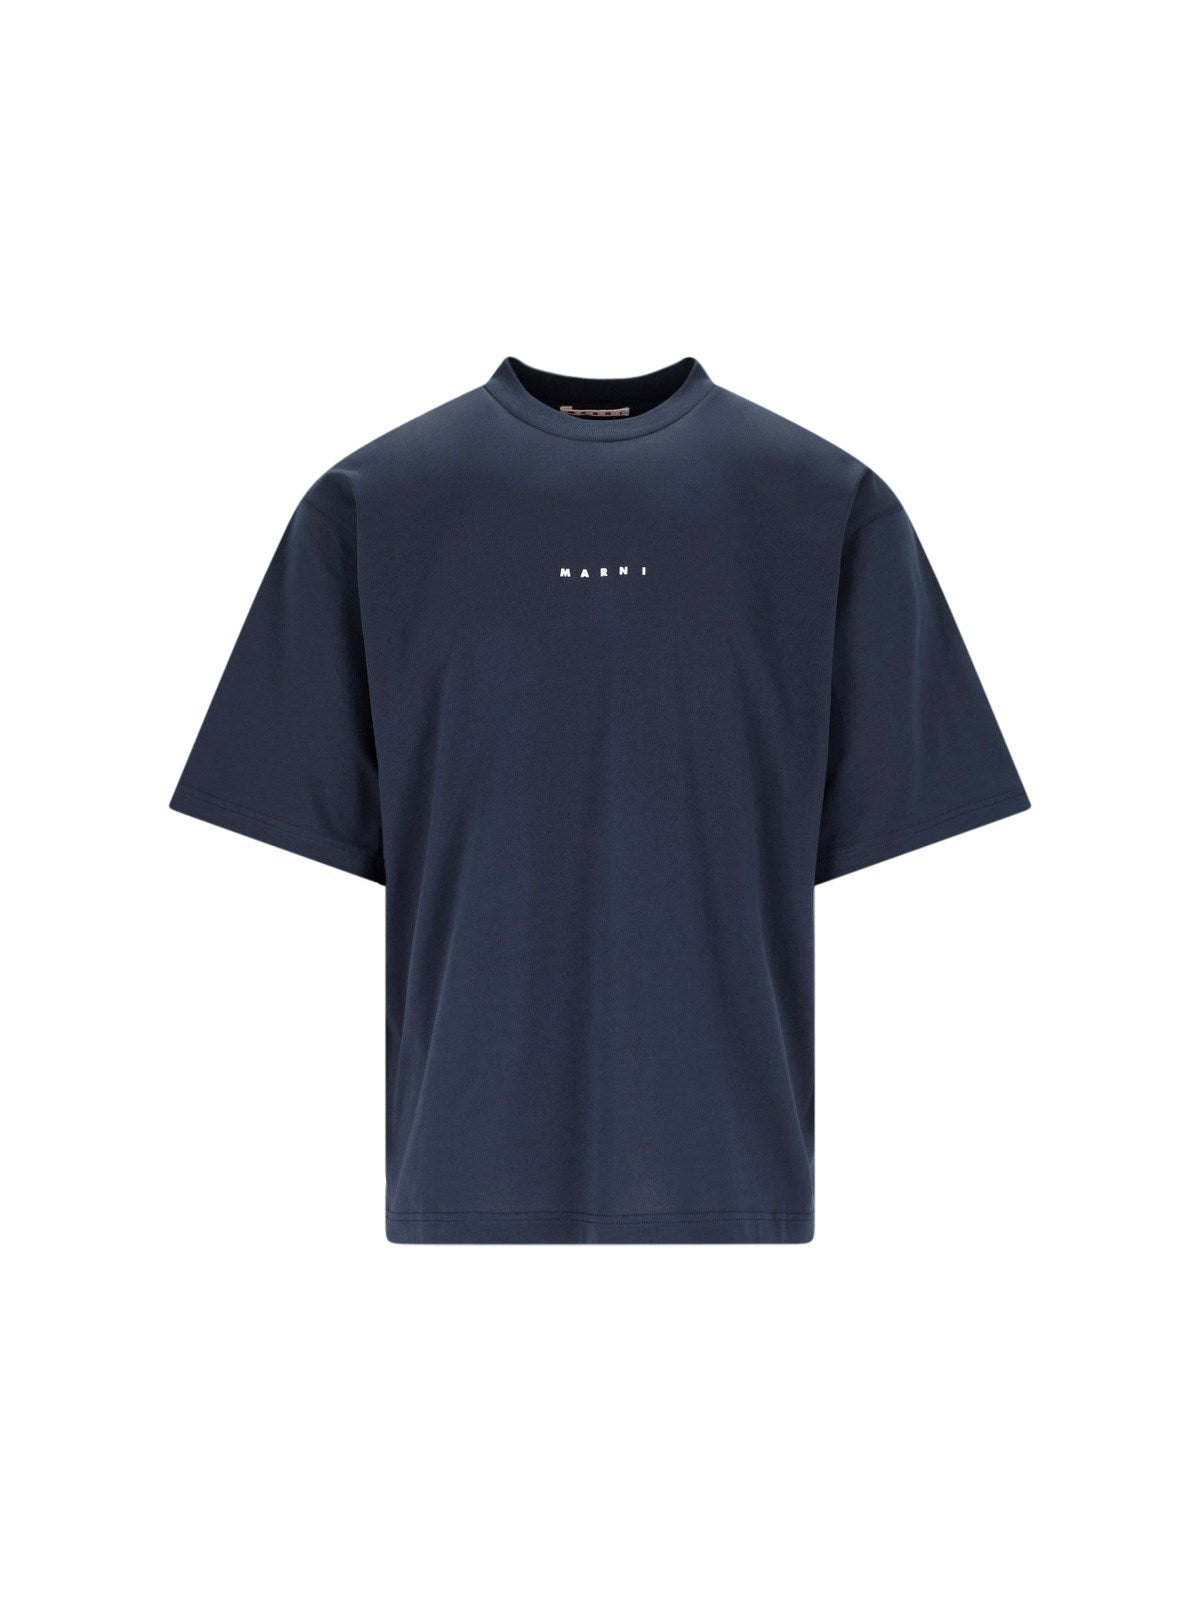 Marni T-Shirt logo-t-shirt-Marni-T-shirt logo Marni - realizzata in cotone biologico - blu, spalle scese, girocollo a costine, maniche corte, stampa logo bianco fronte, orlo dritto.-Dresso